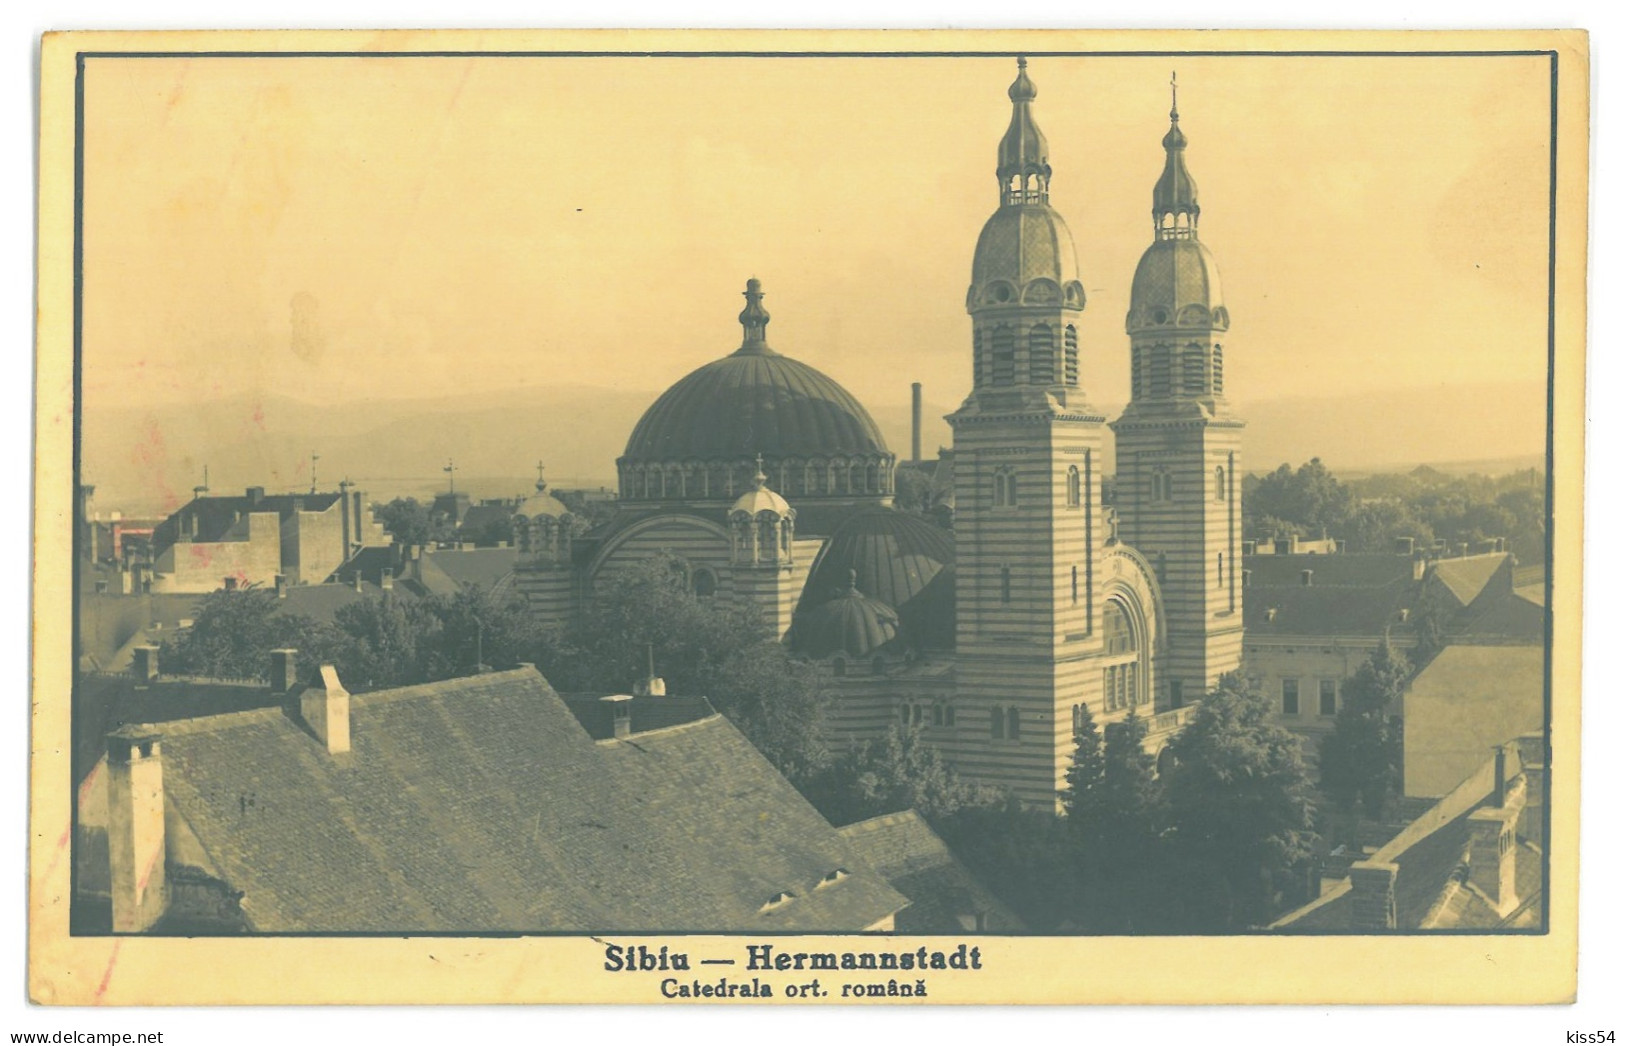 RO 81 - 16198 SIBIU, Romania - Old Postcard, CENSOR, Real PHOTO - Used - 1940 - Rumania